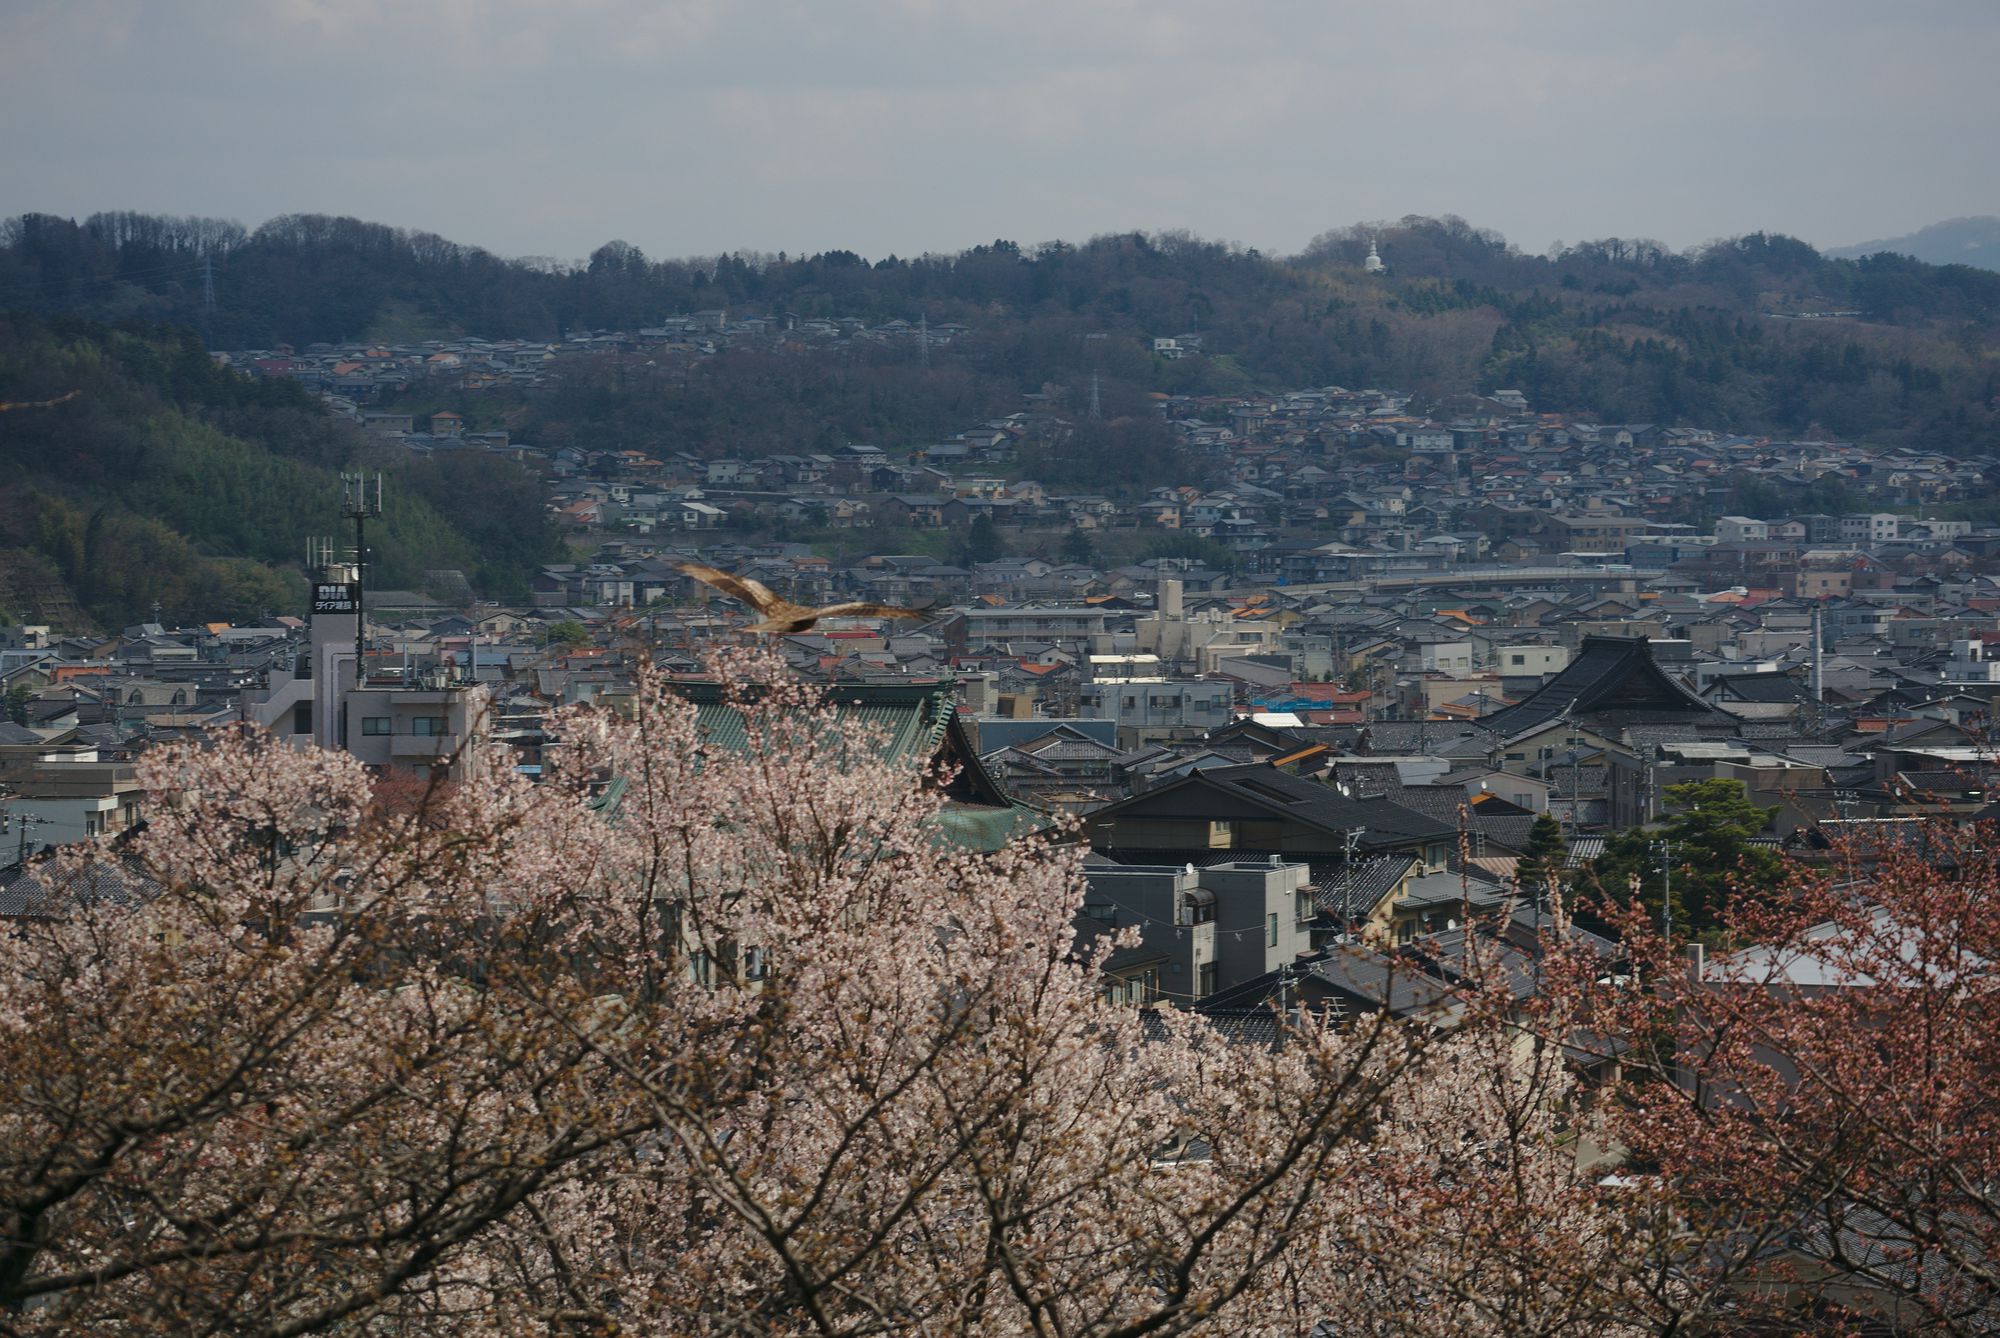 View from Kenroku-en Kanazawa with Black Kite